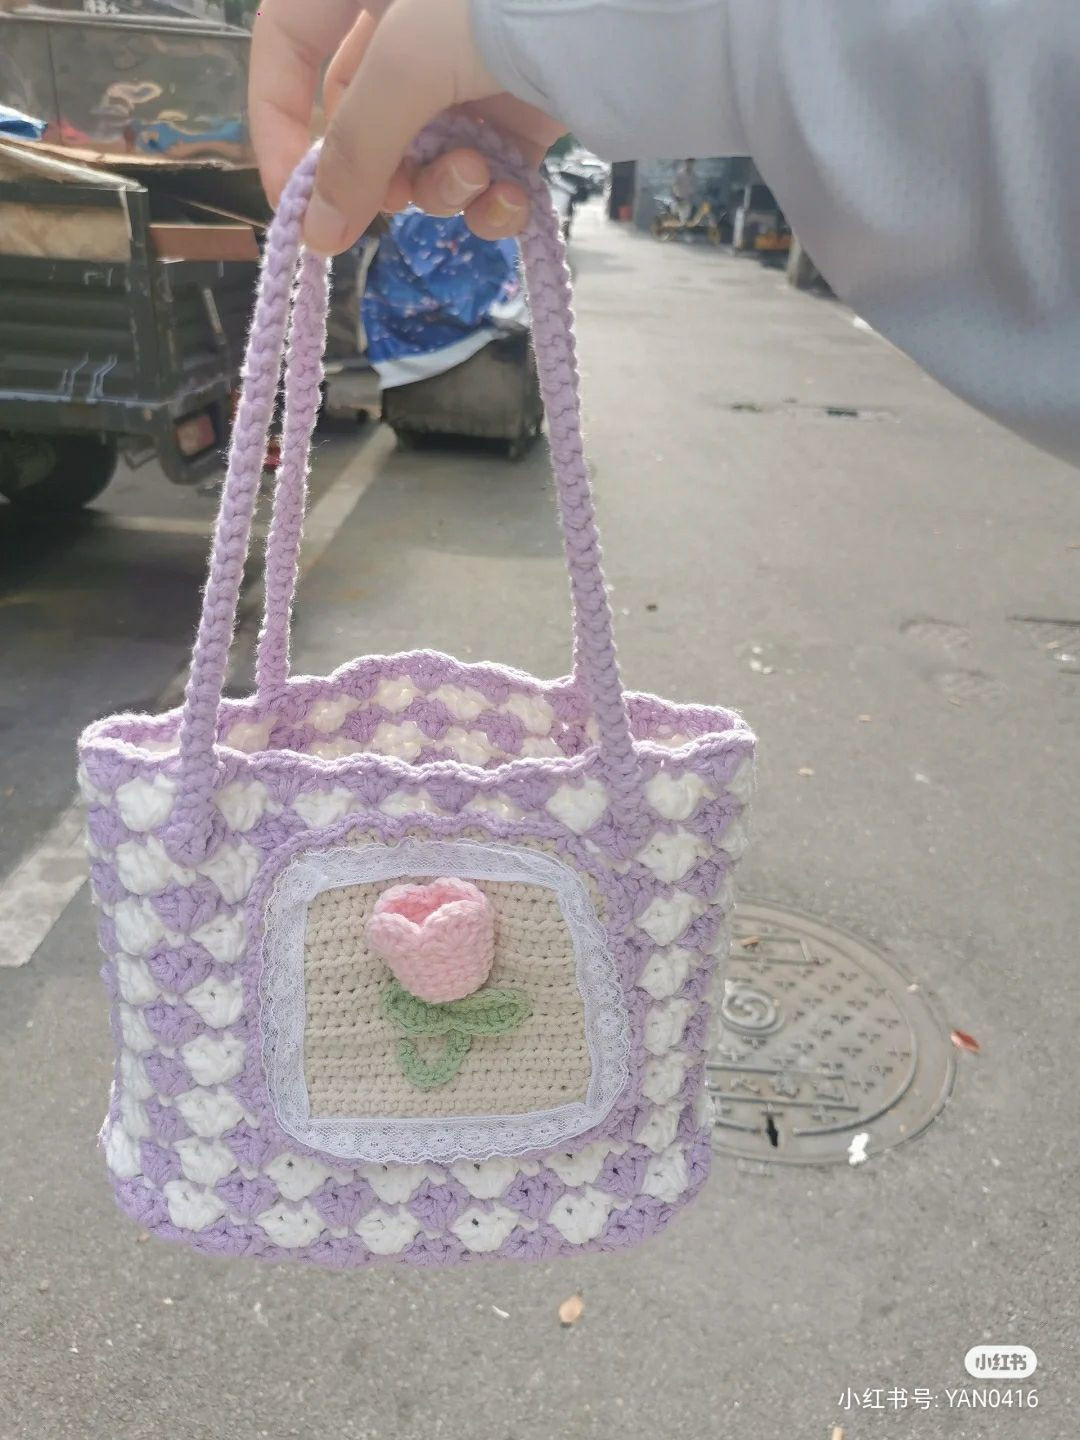 Crochet patterns for star handbags, tulip handbags